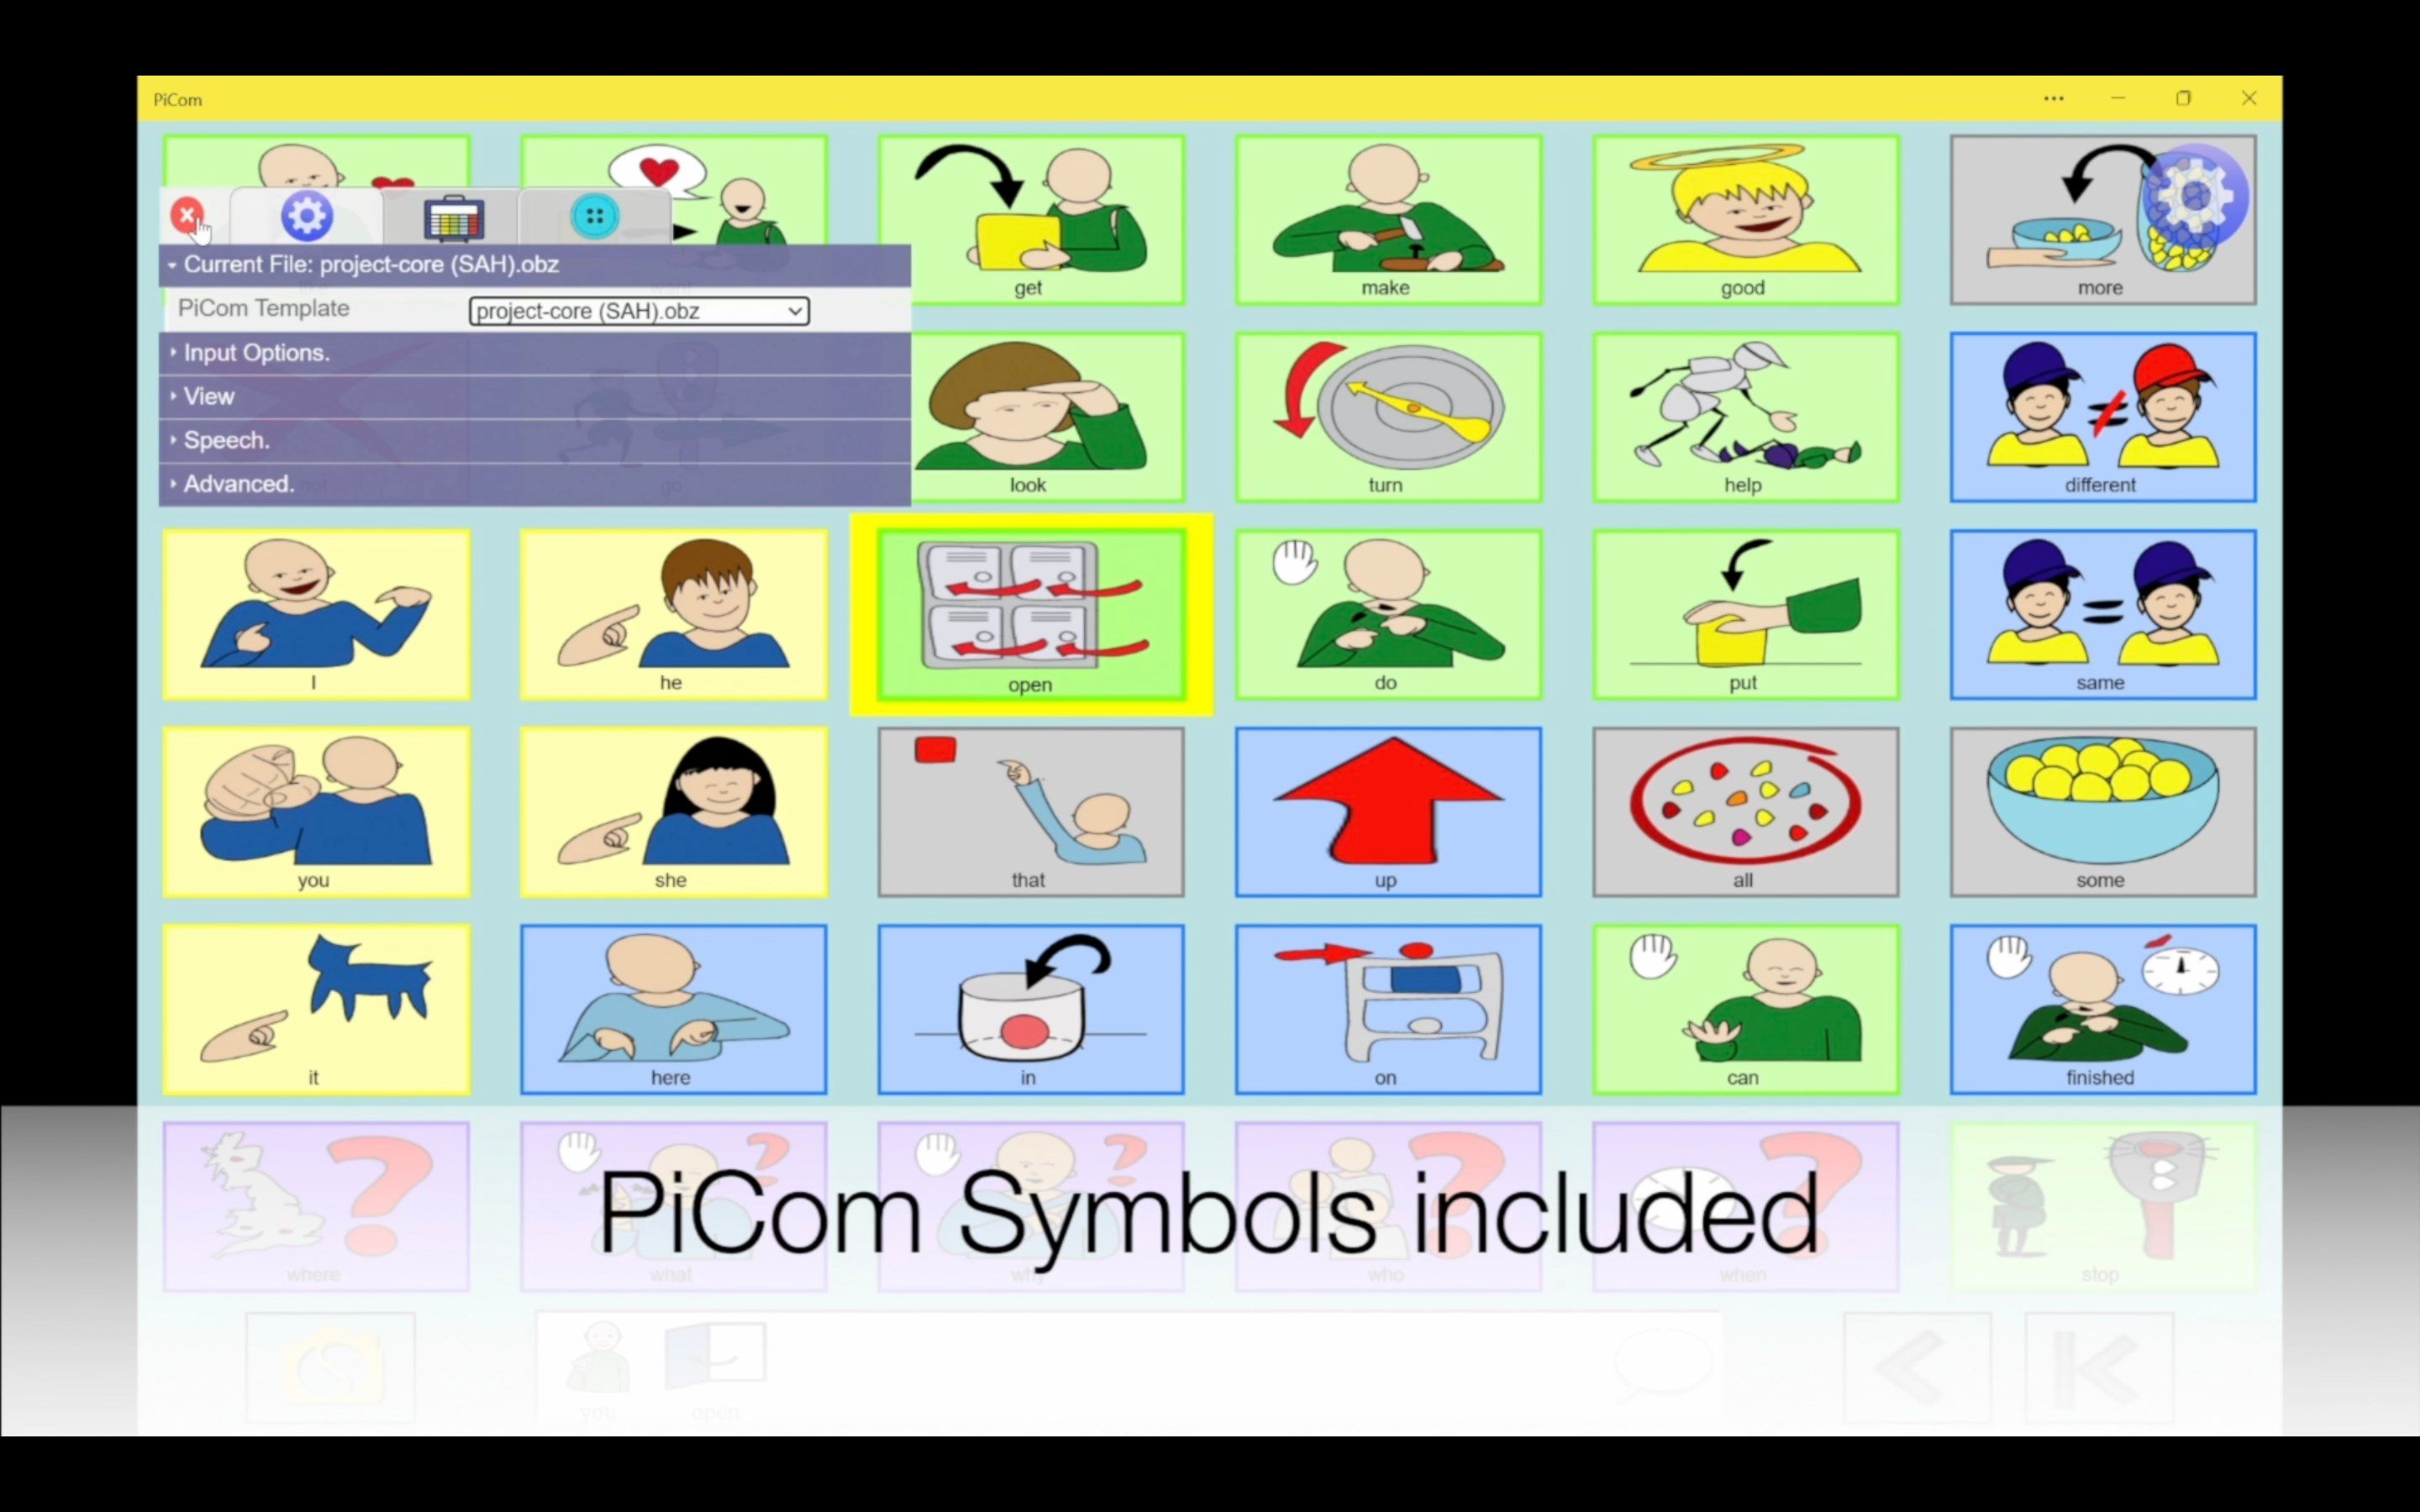 PiCom symbols included